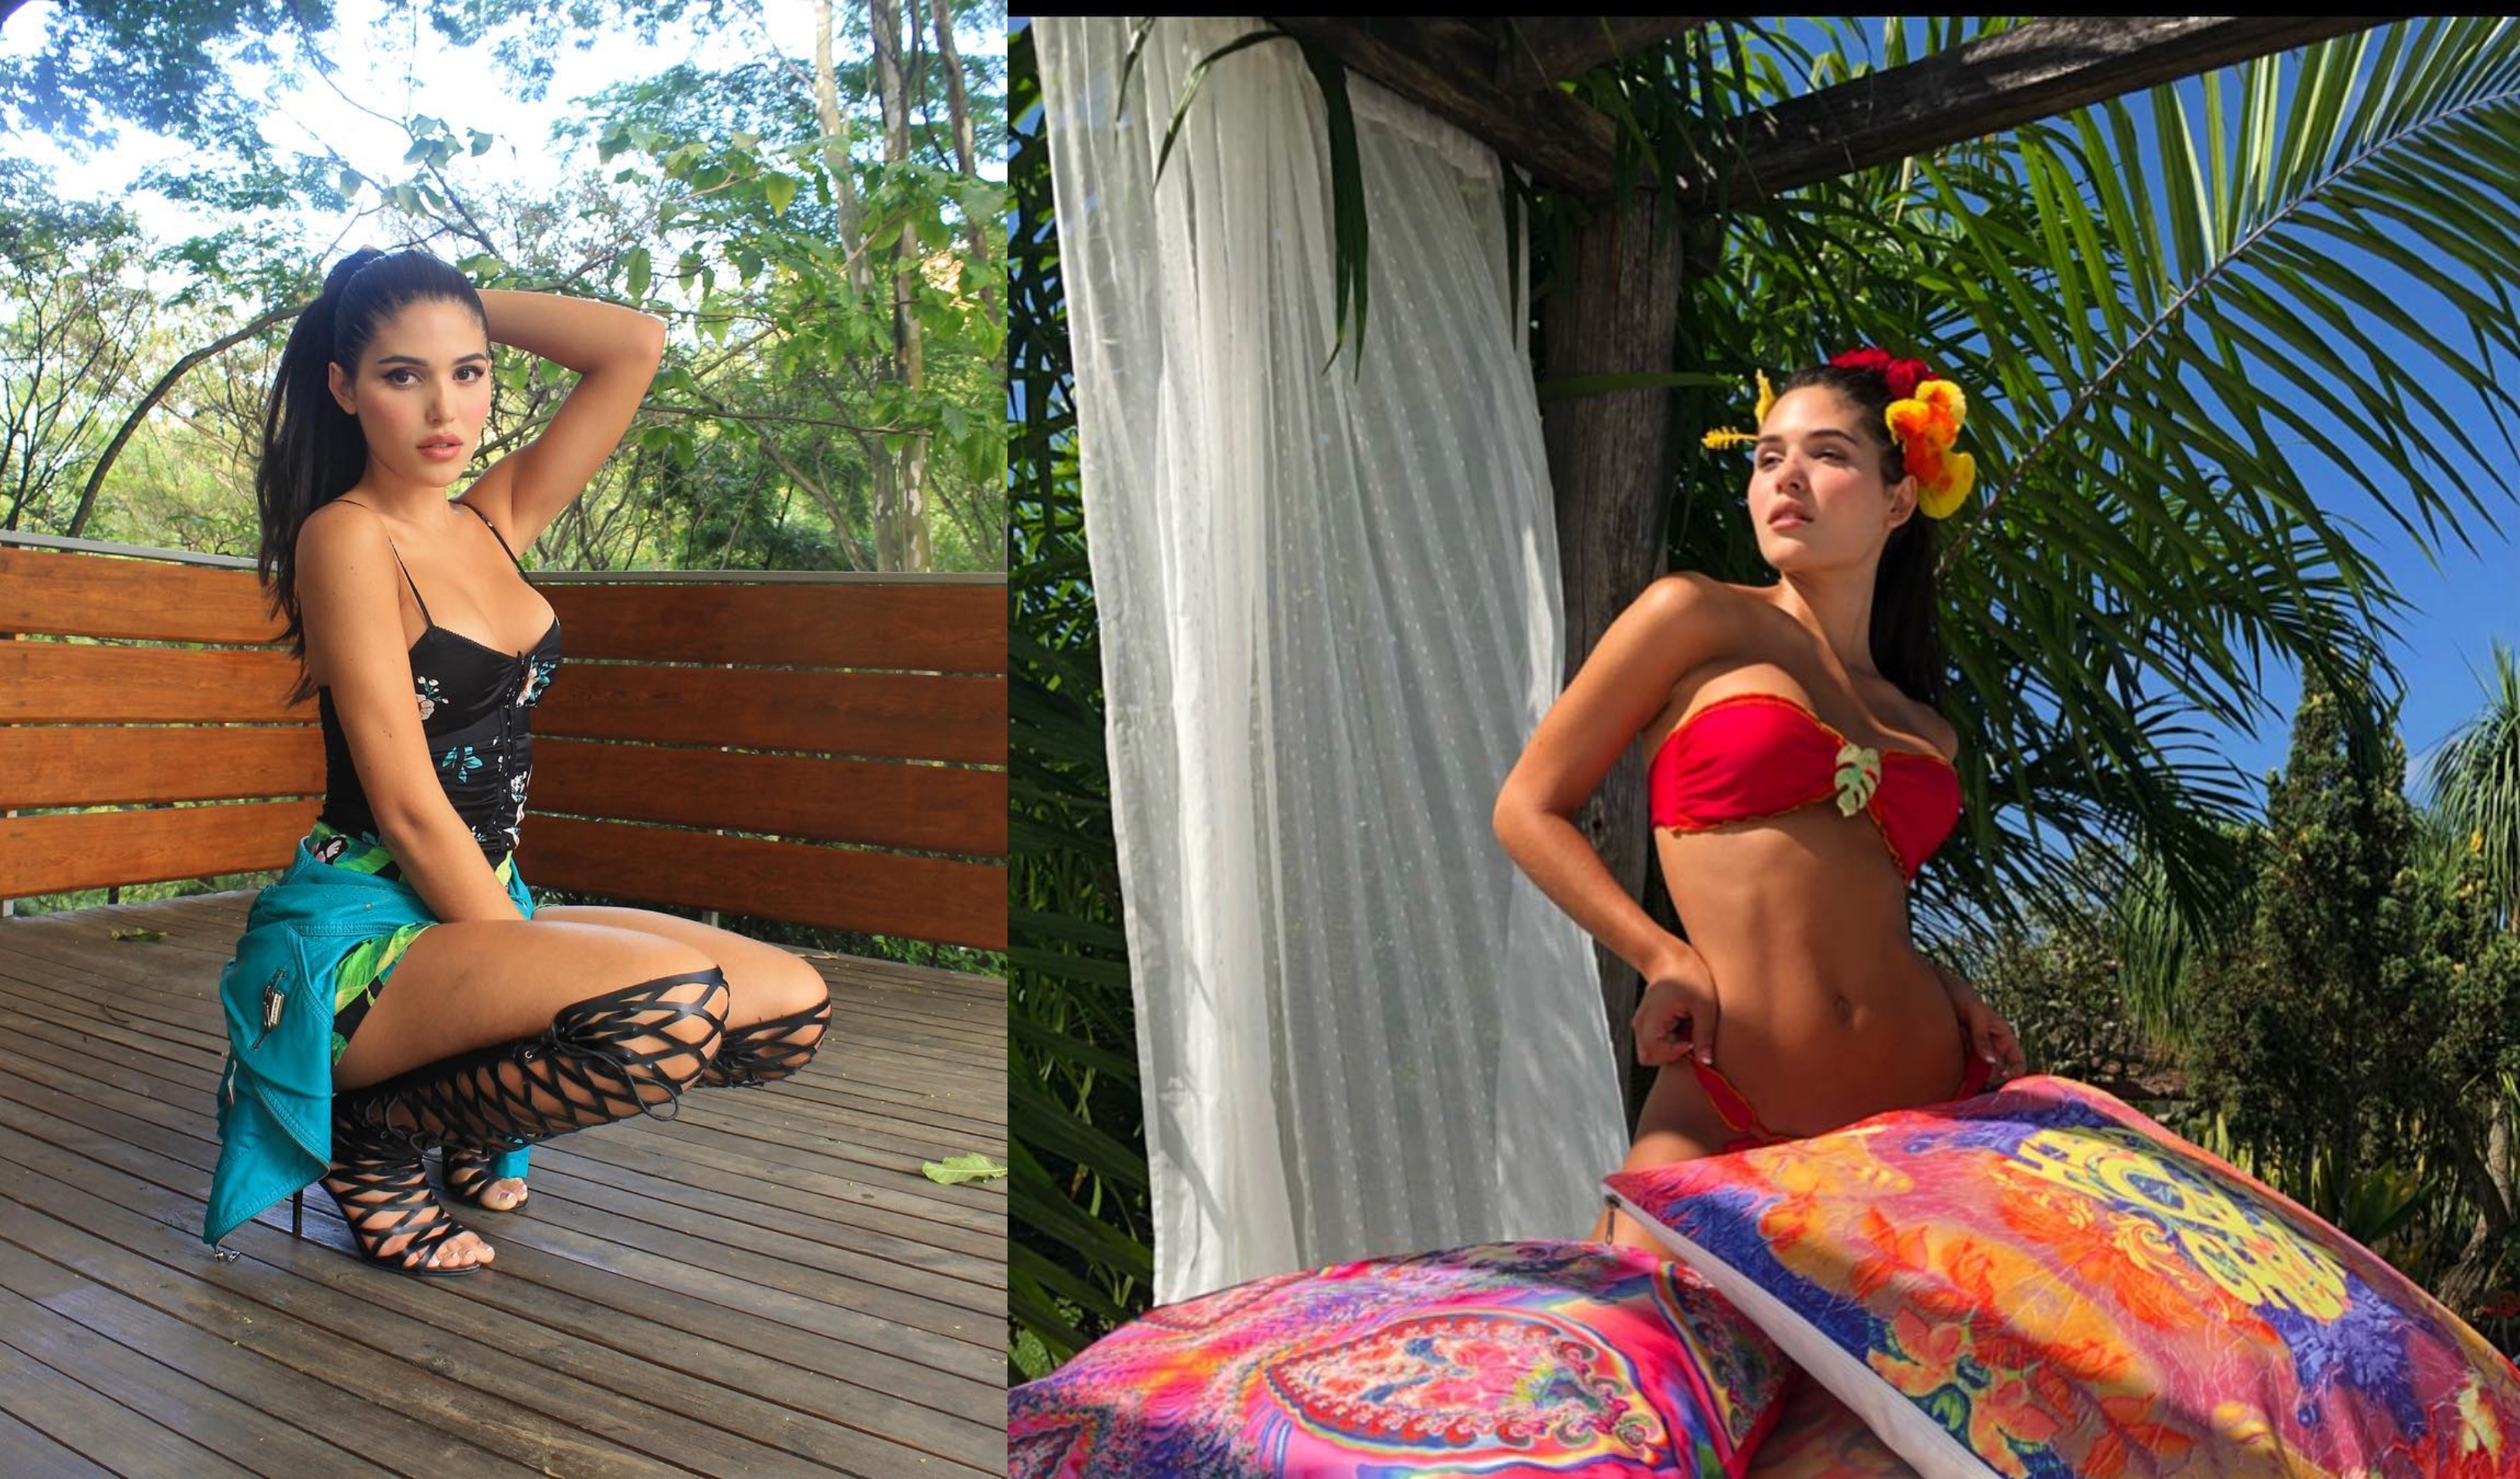 La modelo transgénero Mara Cifuentes posó ligerita de ropa junto a su novio (Fotos)